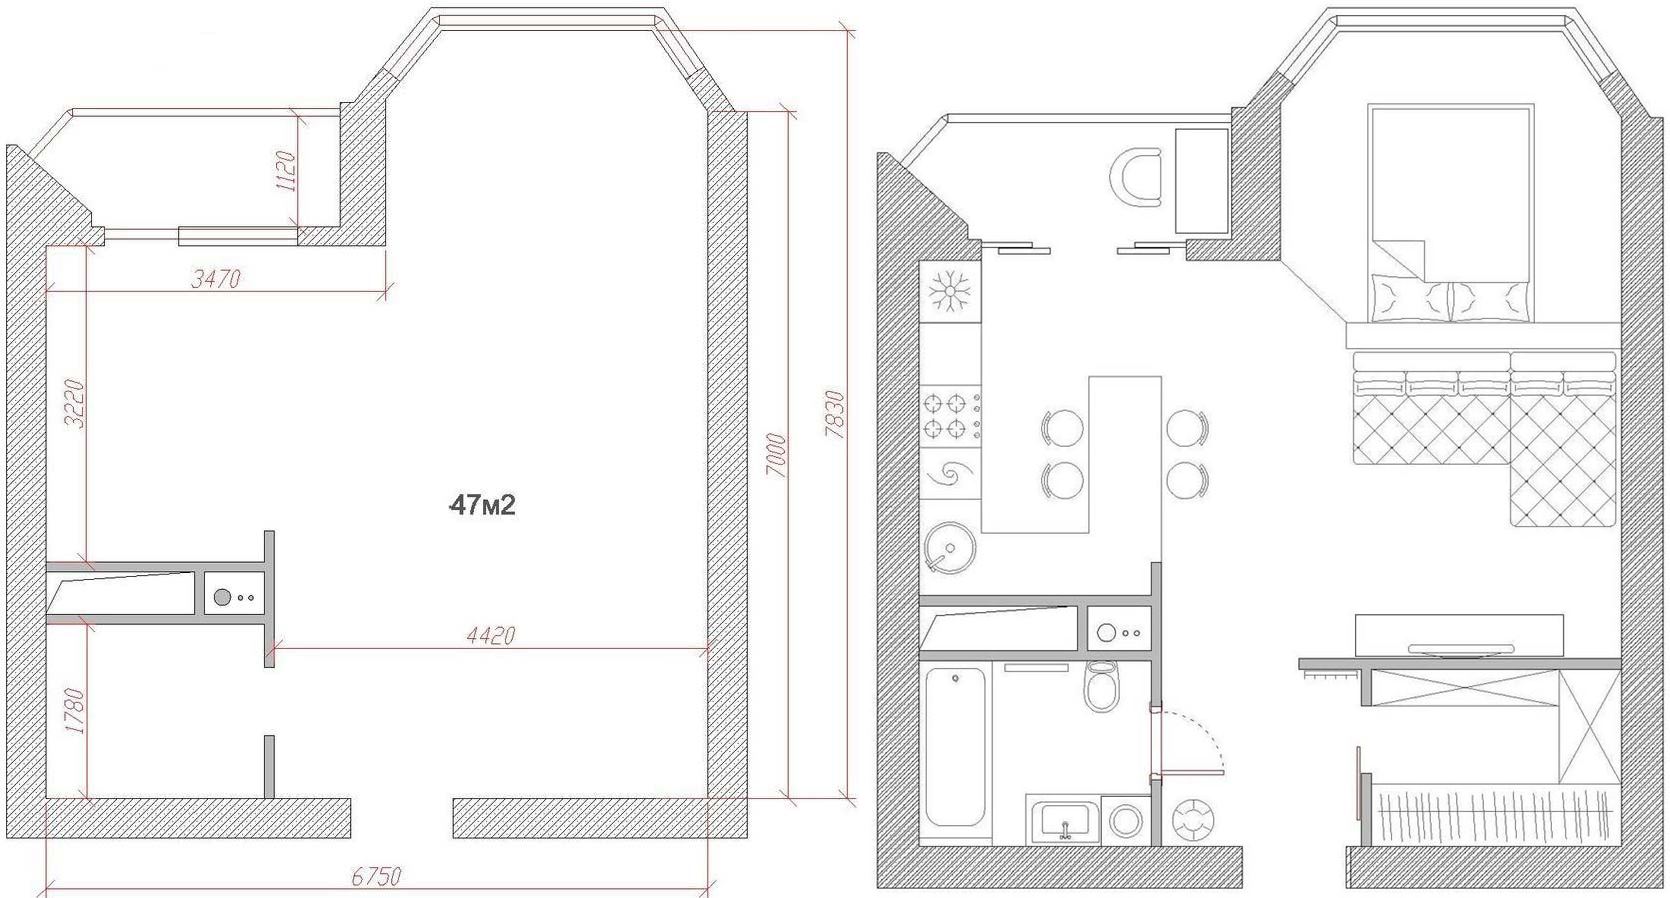 Alaprajz - Férfias lakberendezés, jól átgondolt elosztás 47m2-es új, egyszobás lakásban - modern terek, szép fa és meleg árnyalatú tégla